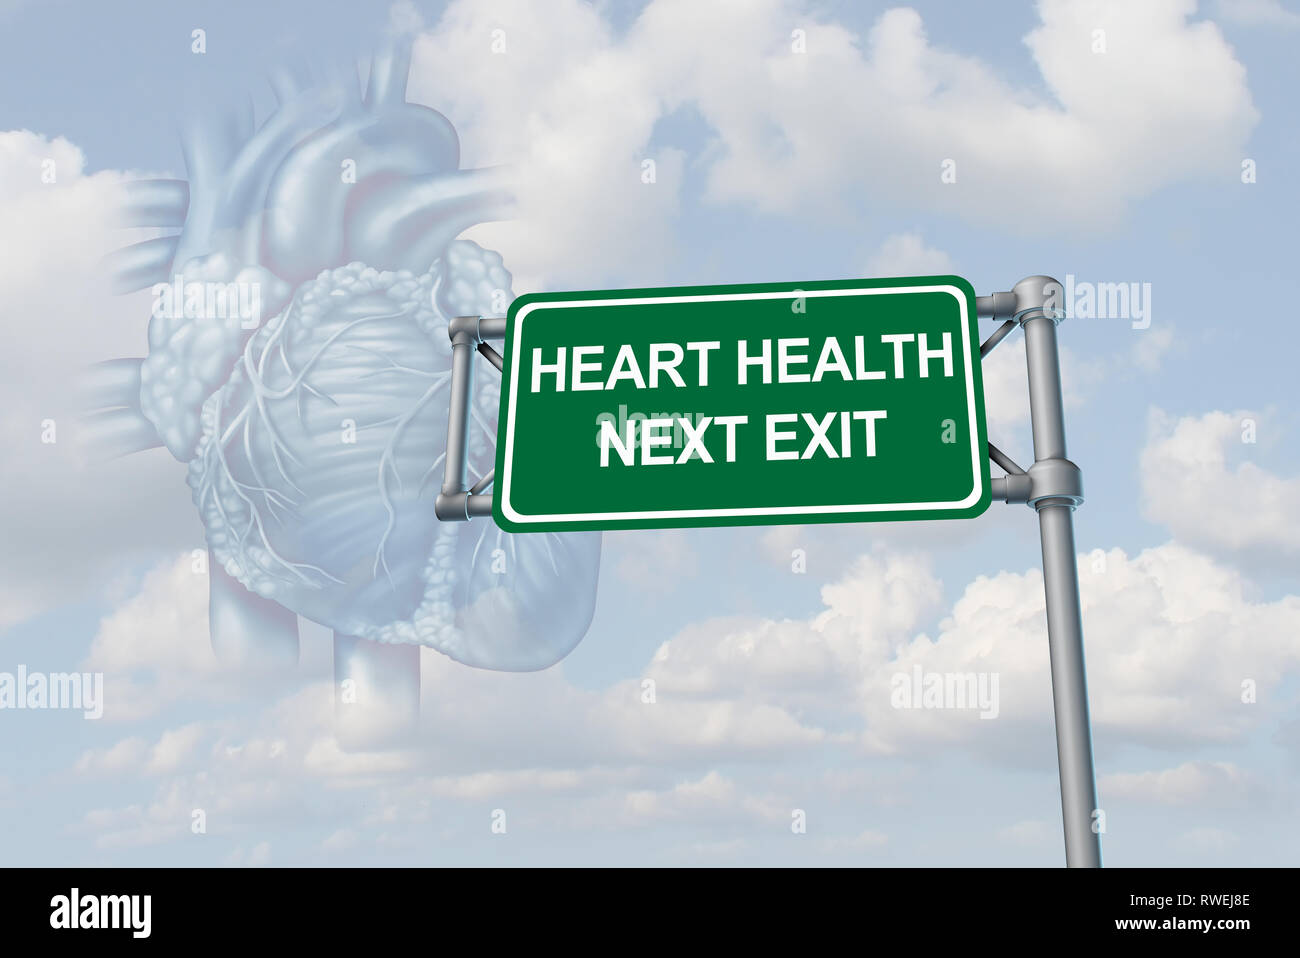 Salud del corazón humano y la anatomía del cuerpo como un sistema cardiovascular sano o asistencia sanitaria coronaria con ilustración 3D elementos. Foto de stock